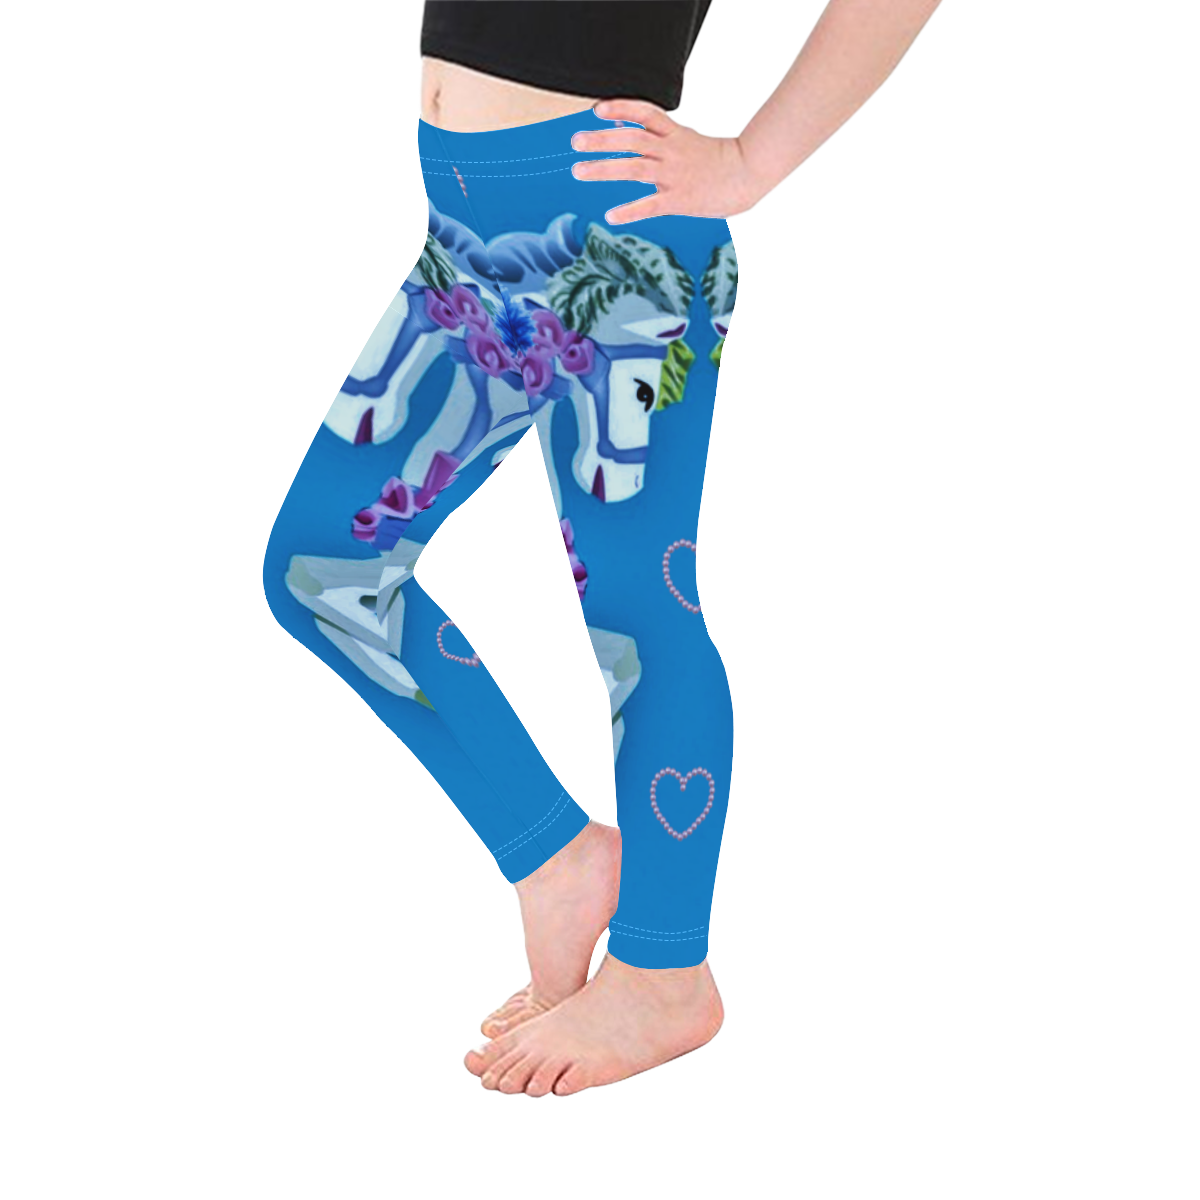 Girly Carousel Ponies - Blue kids leggings Kid's Ankle Length Leggings (Model L06)